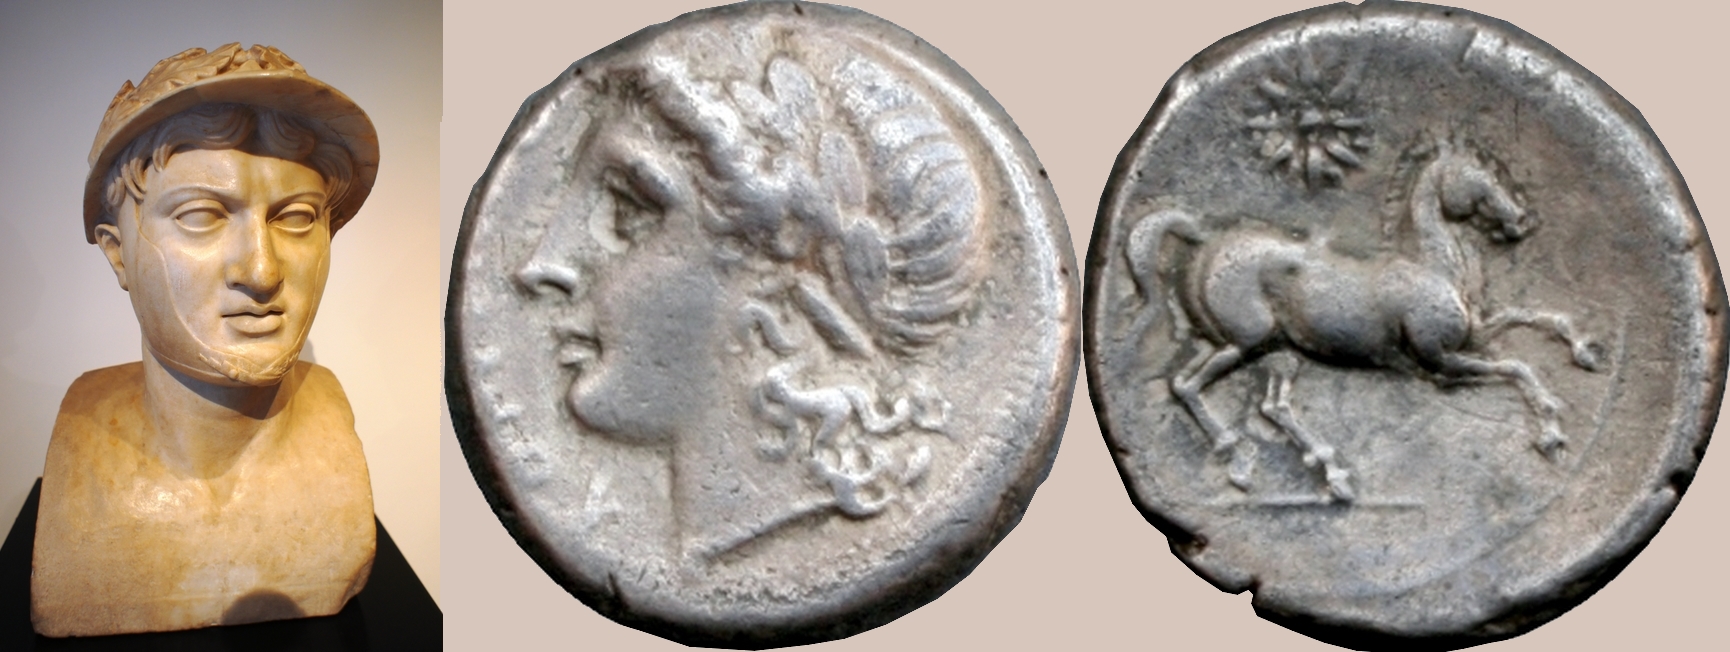 15/1 coin of Consuls Publius Decimus Mus and Publius Valerius Laevinus, with bust of Pyrrhus, winner of Pyrrhic victories at Heraclea 280BC and Asculum 279BC